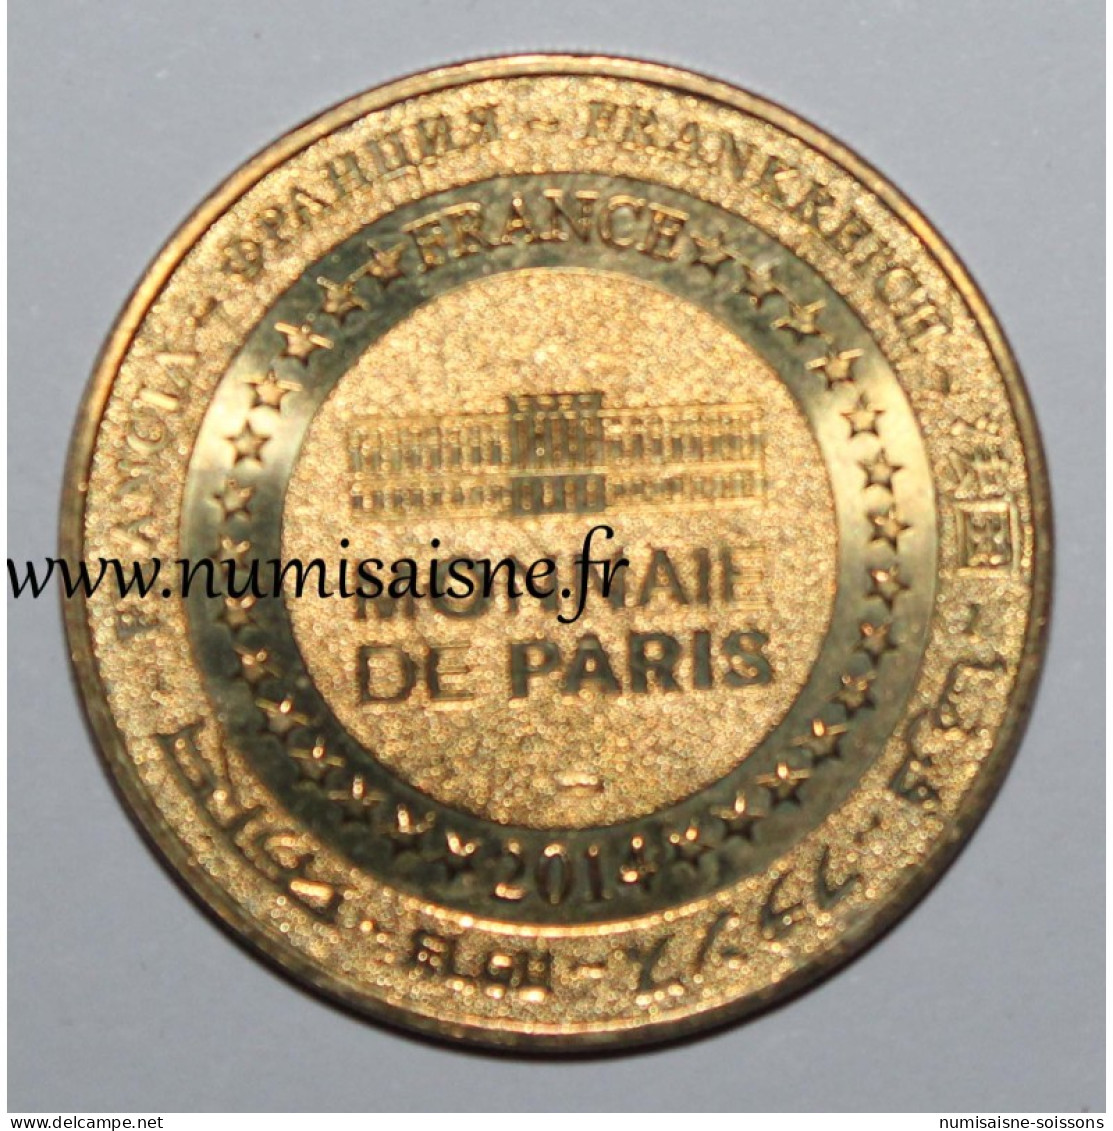 85 - LES EPESSES - PARC DU PUY DU FOU - Monnaie De Paris - 2014 - 2014